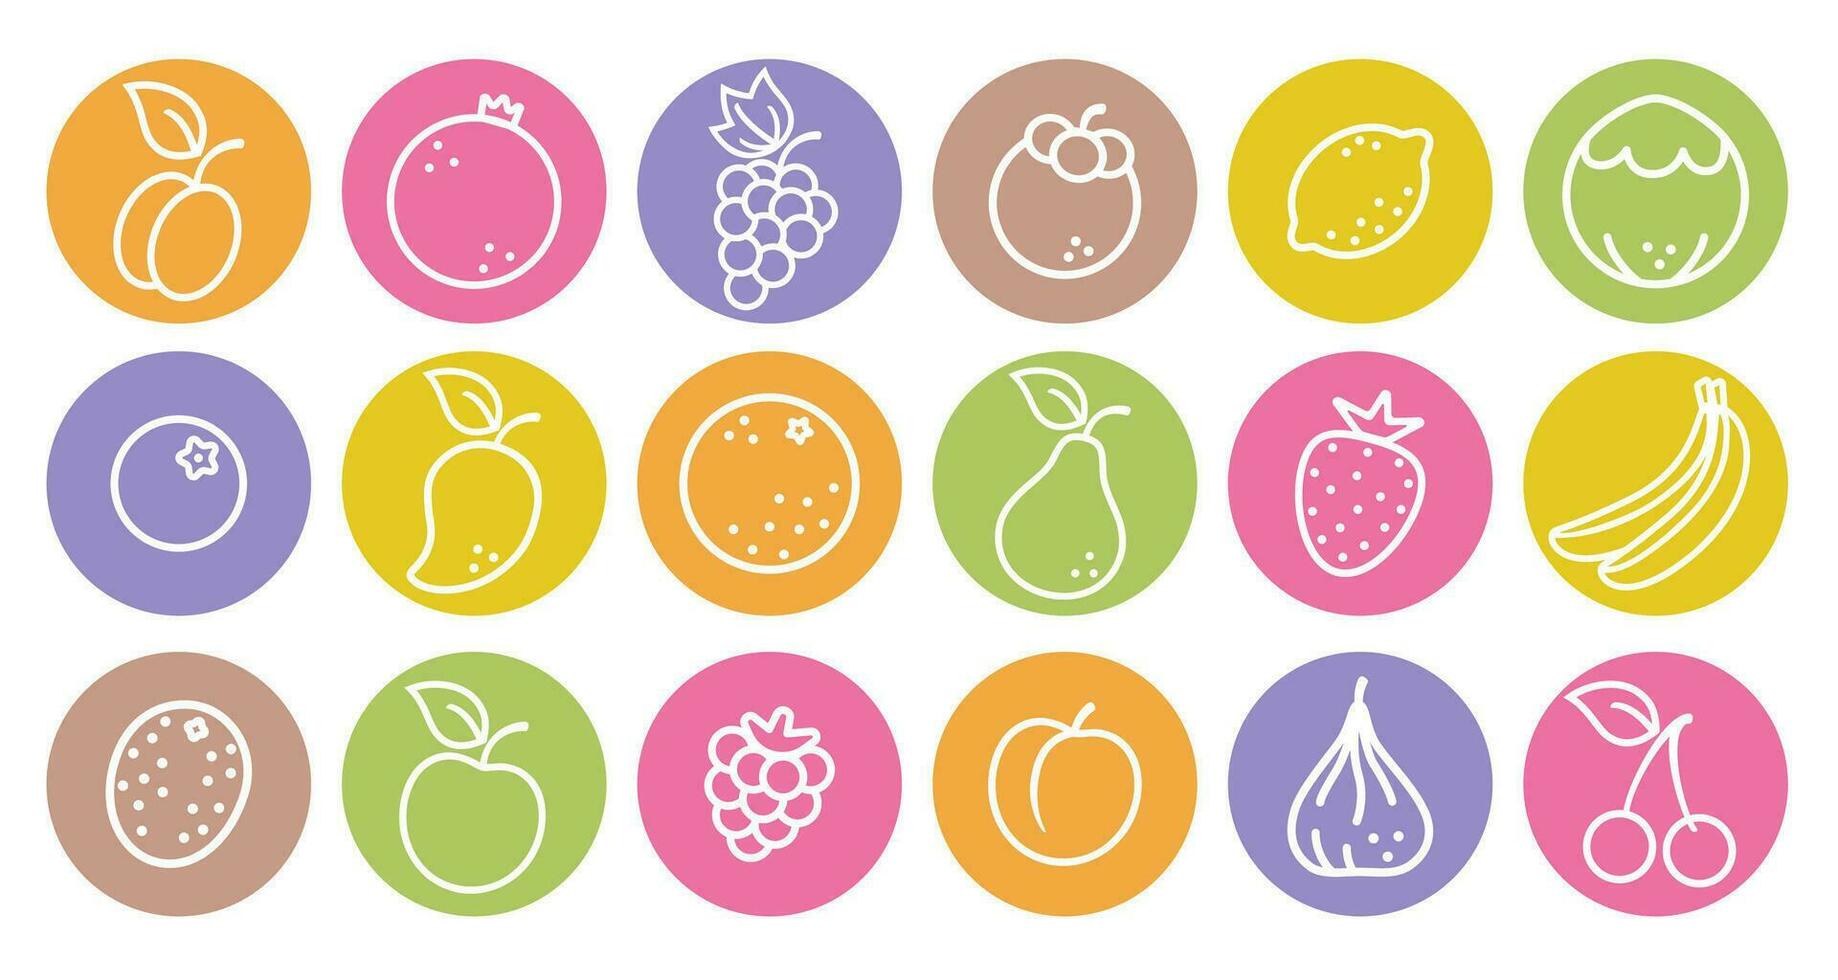 vektor uppsättning ikoner av frukt och bär i platt stil. vektor illustrationer av frukt och bär.